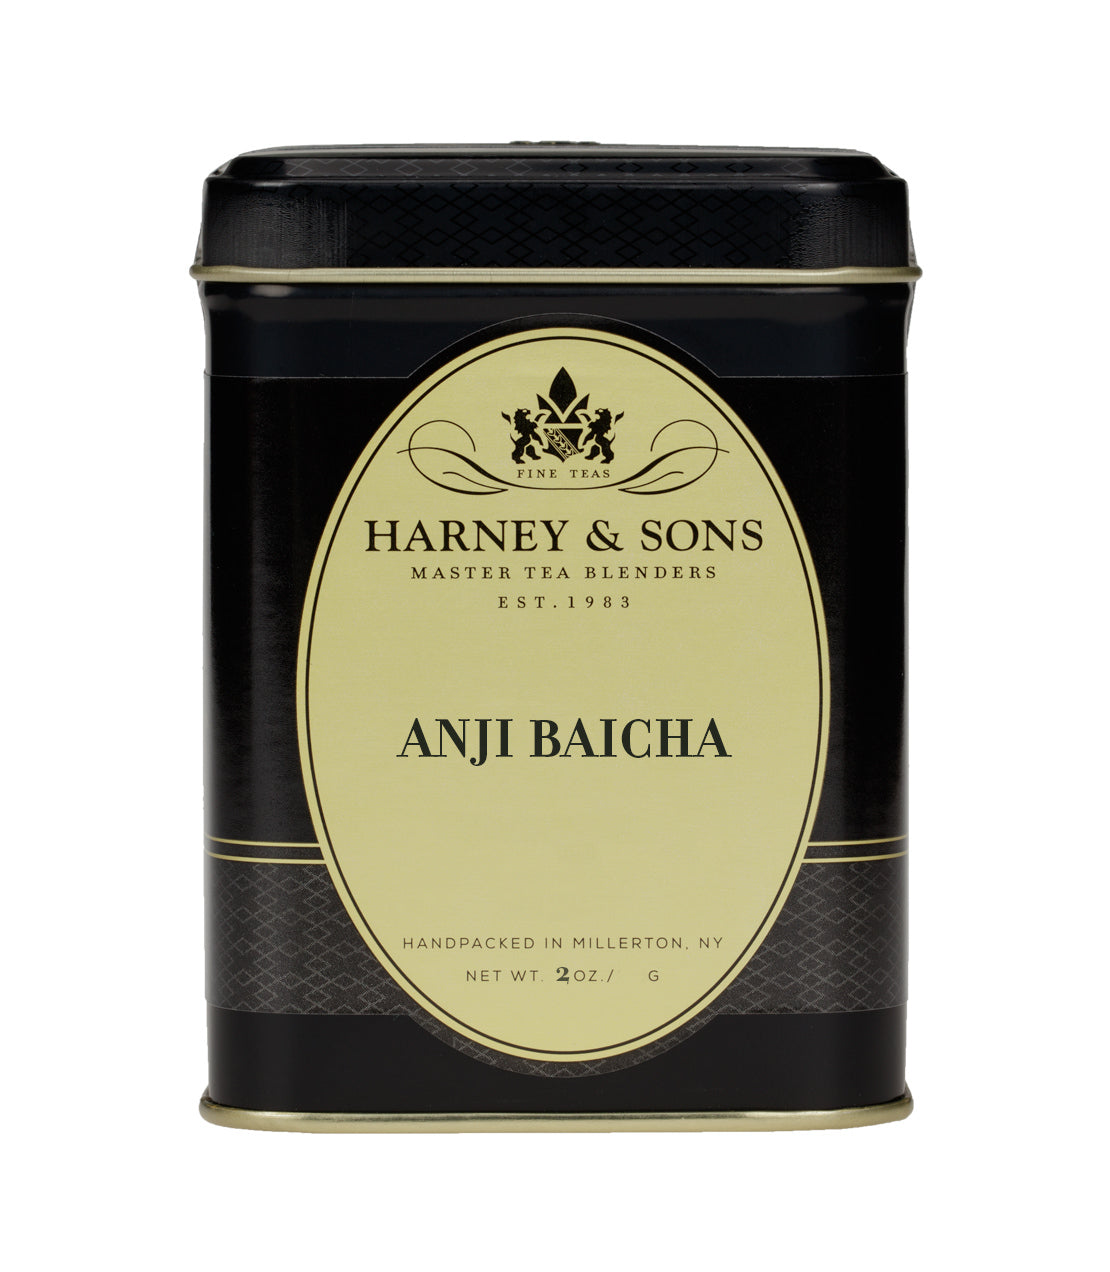 Anji Baicha - Loose 2 oz. Tin - Harney & Sons Fine Teas